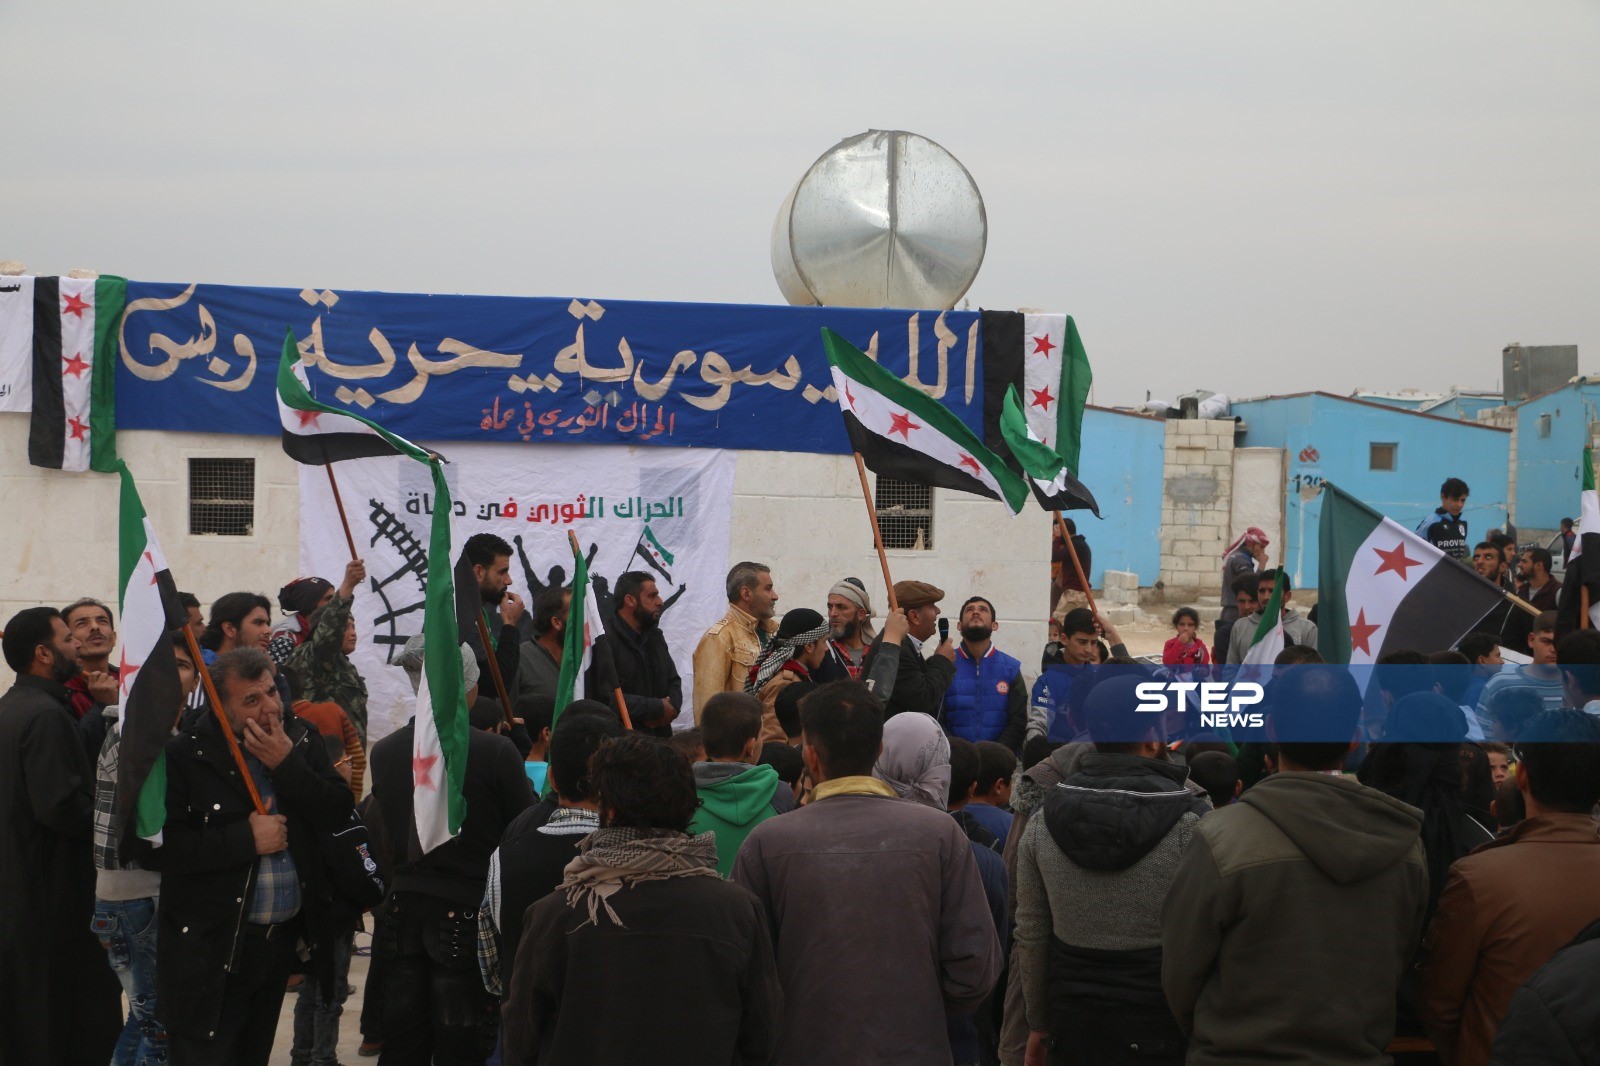 بالصور || مظاهرة بالمخيمات الحدودية مع تركيا طالبت بإسقاط النظام وإيقاف القصف على إدلب